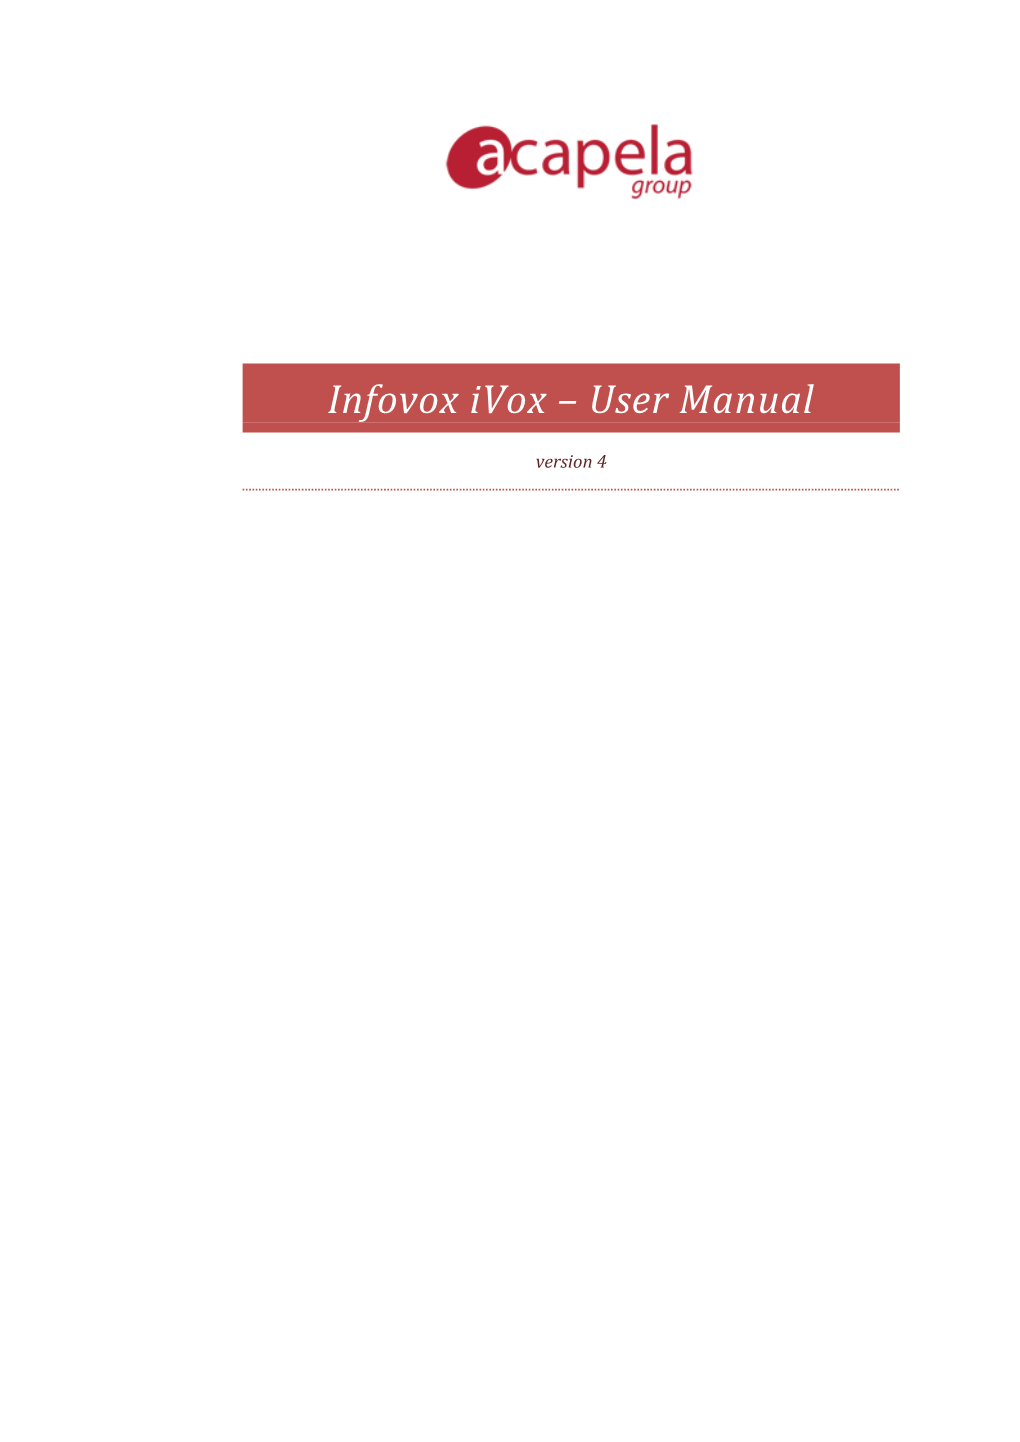 Infovox Ivox – User Manual